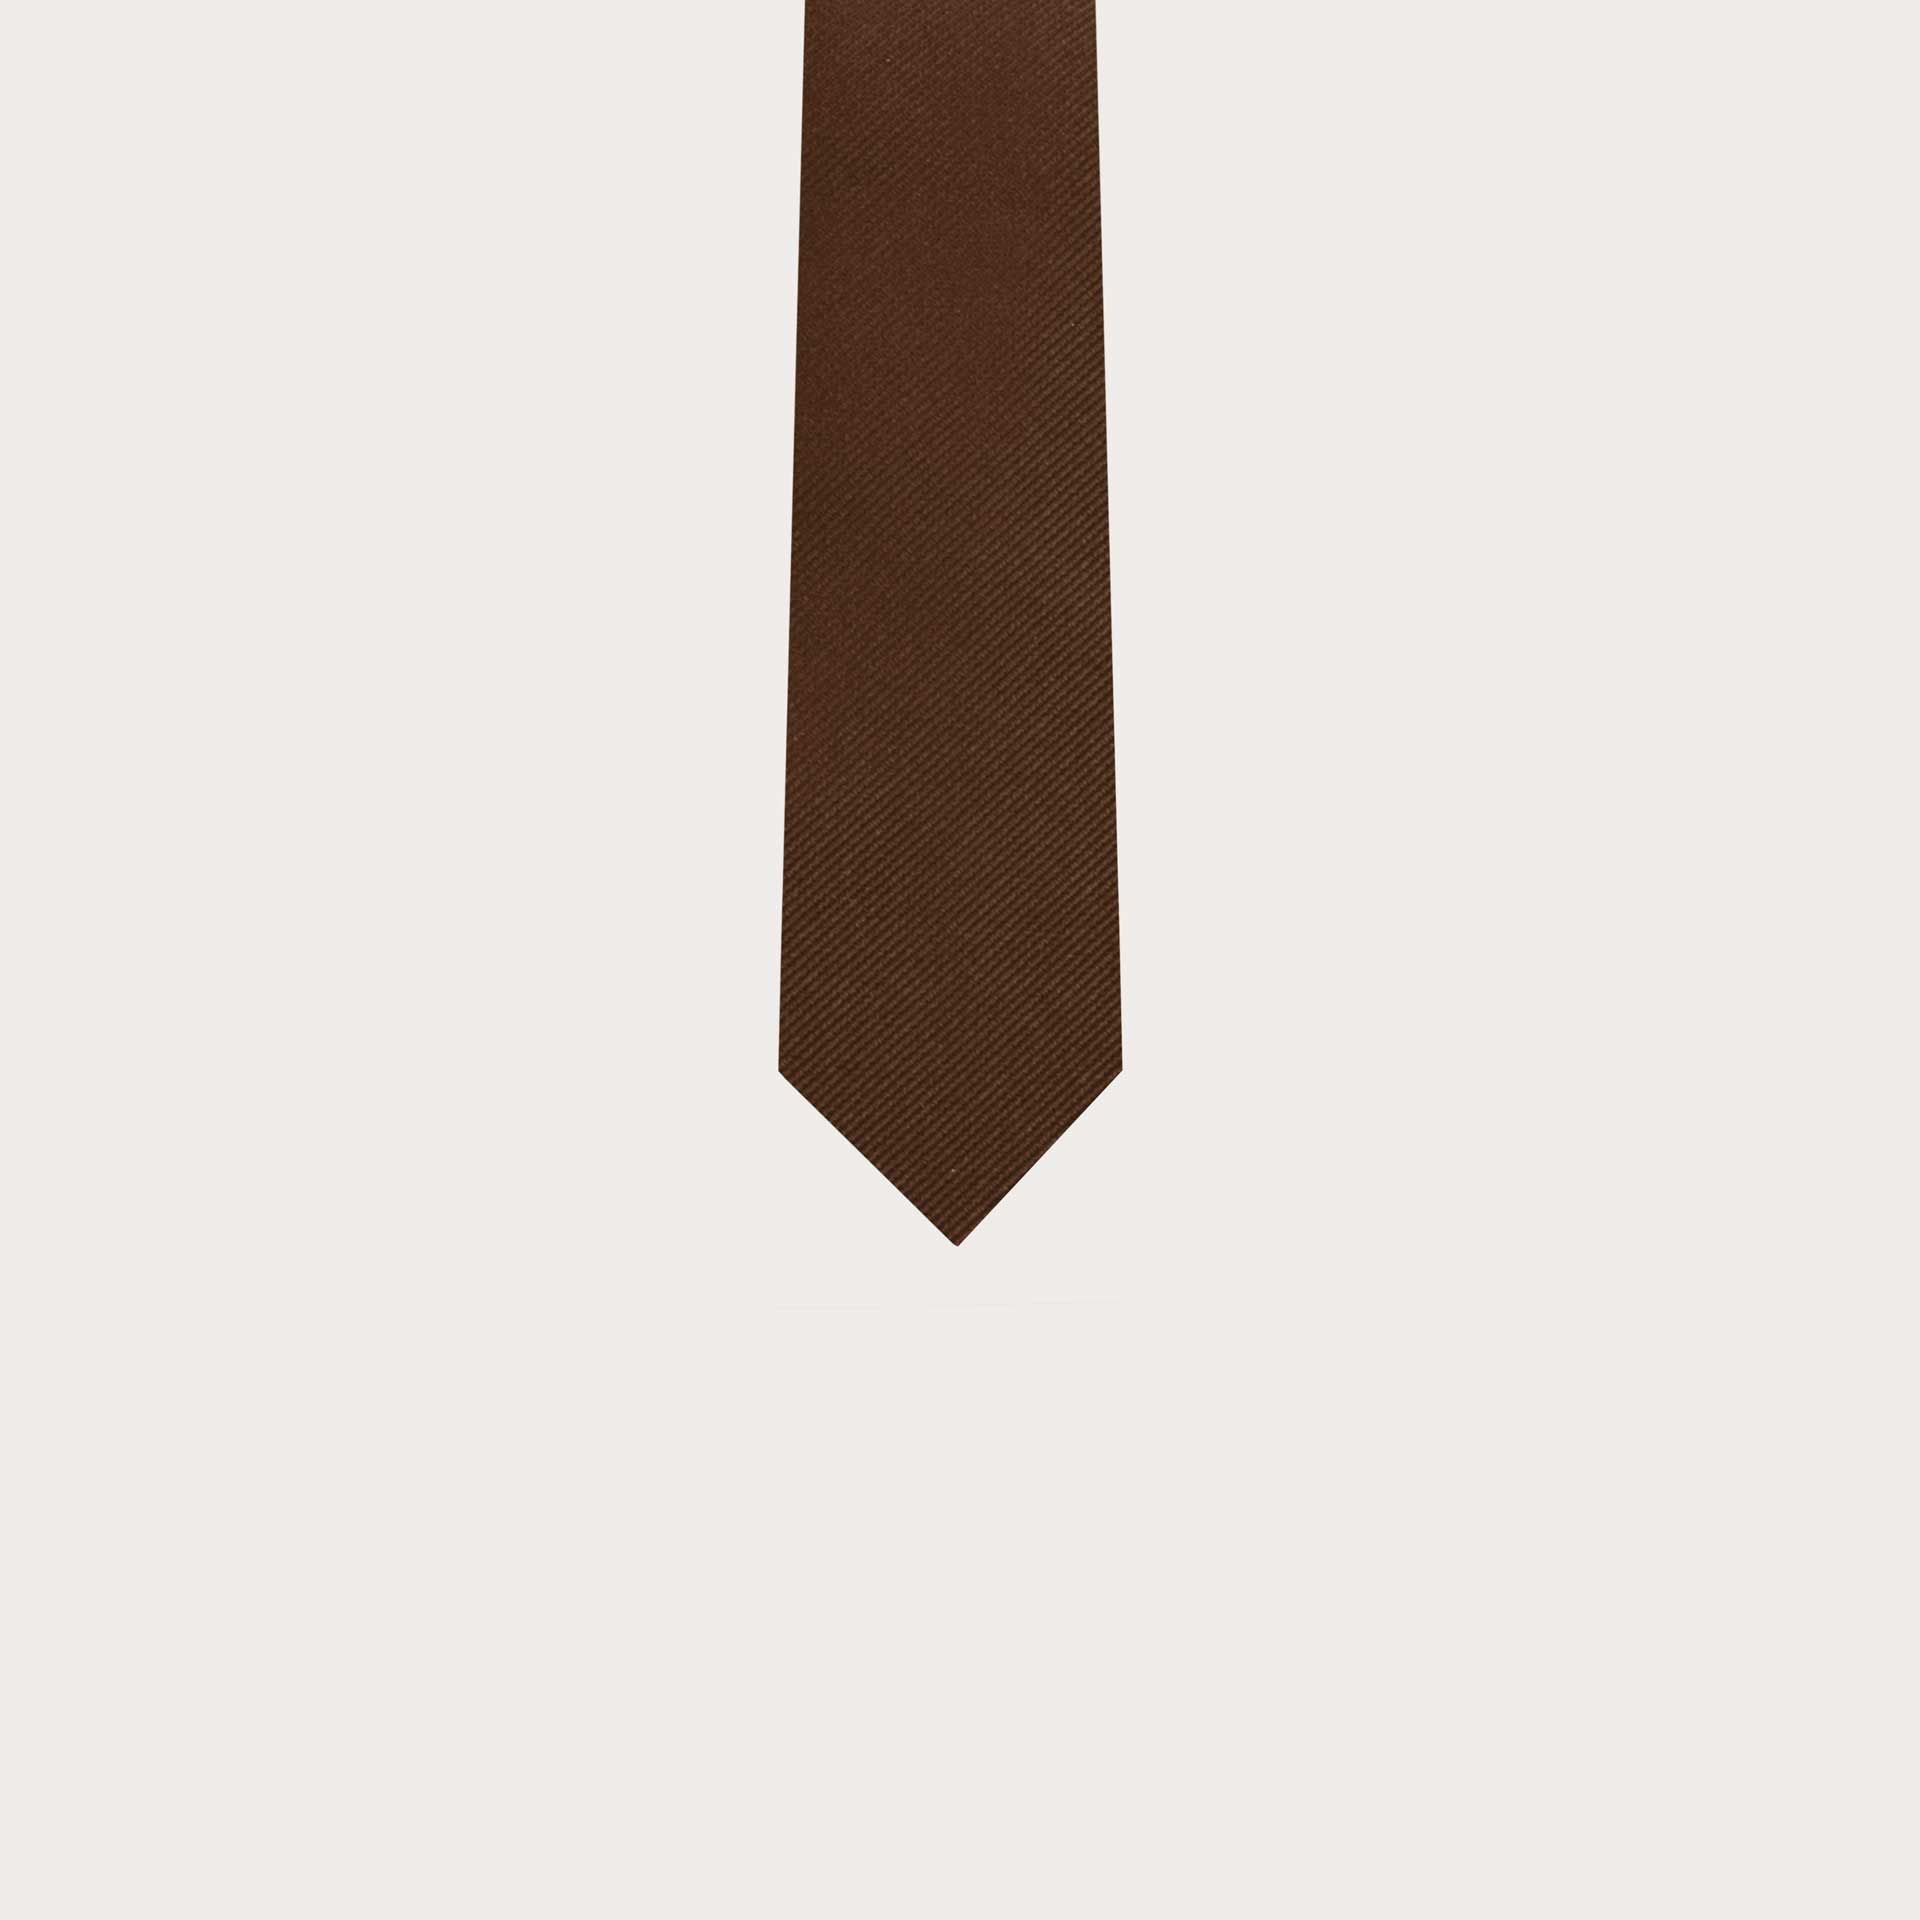 BRUCLE Cravatta marrone in seta per bambino e ragazzo